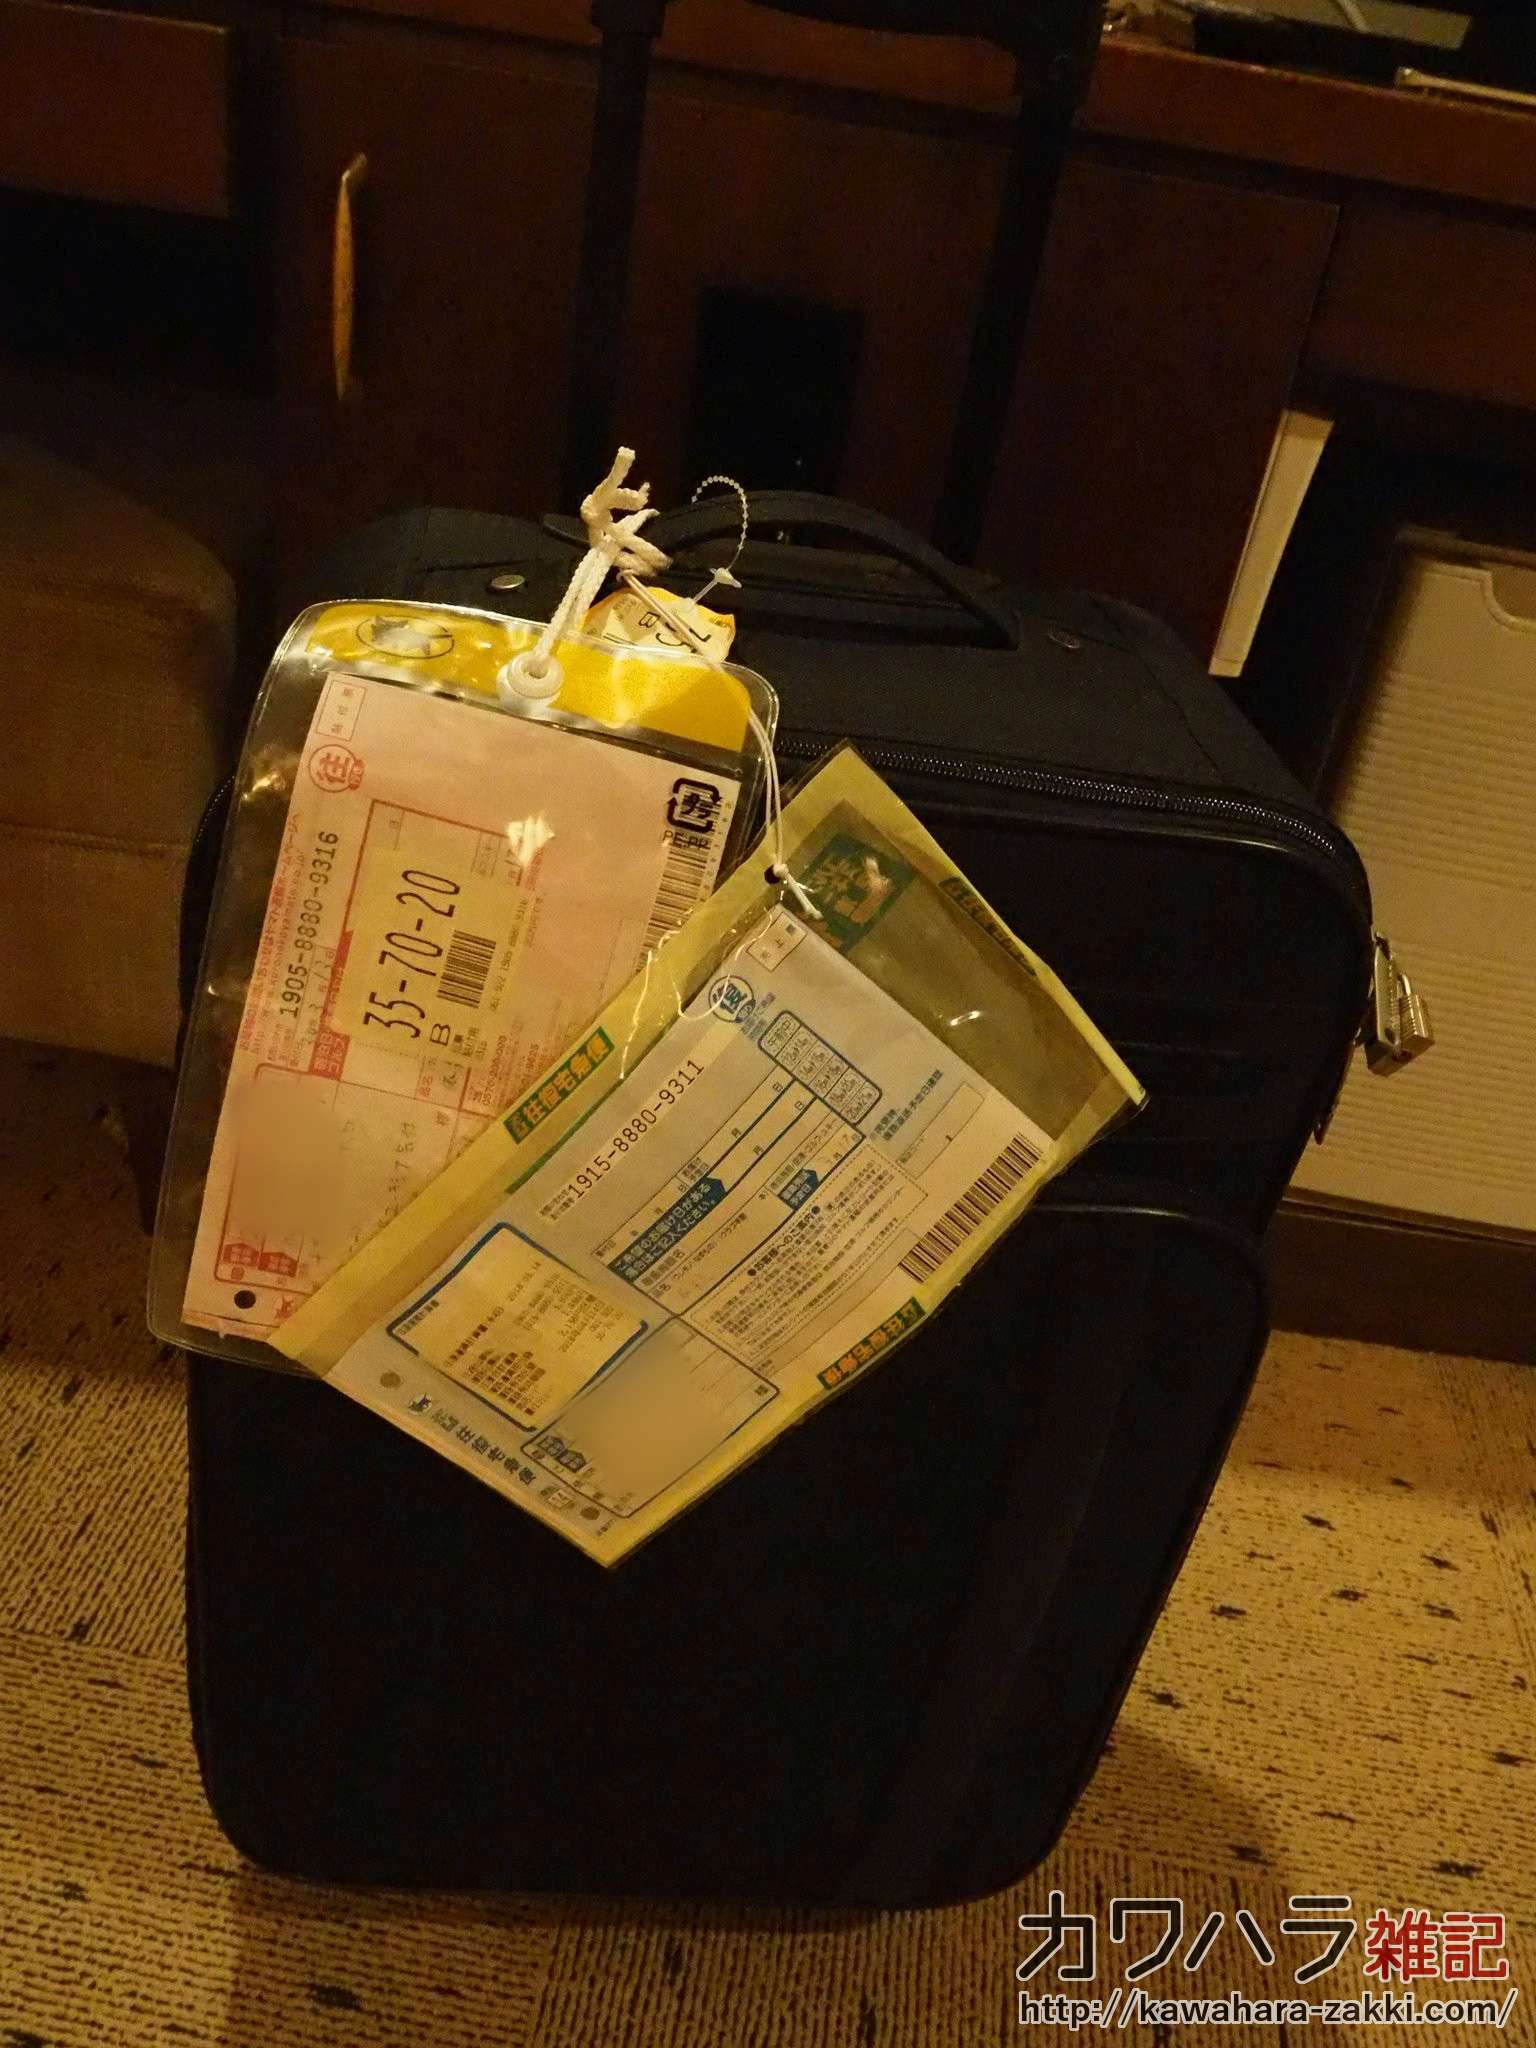 スーツケースをホテルへ往復宅急便で送ると便利だった 新幹線で荷物が